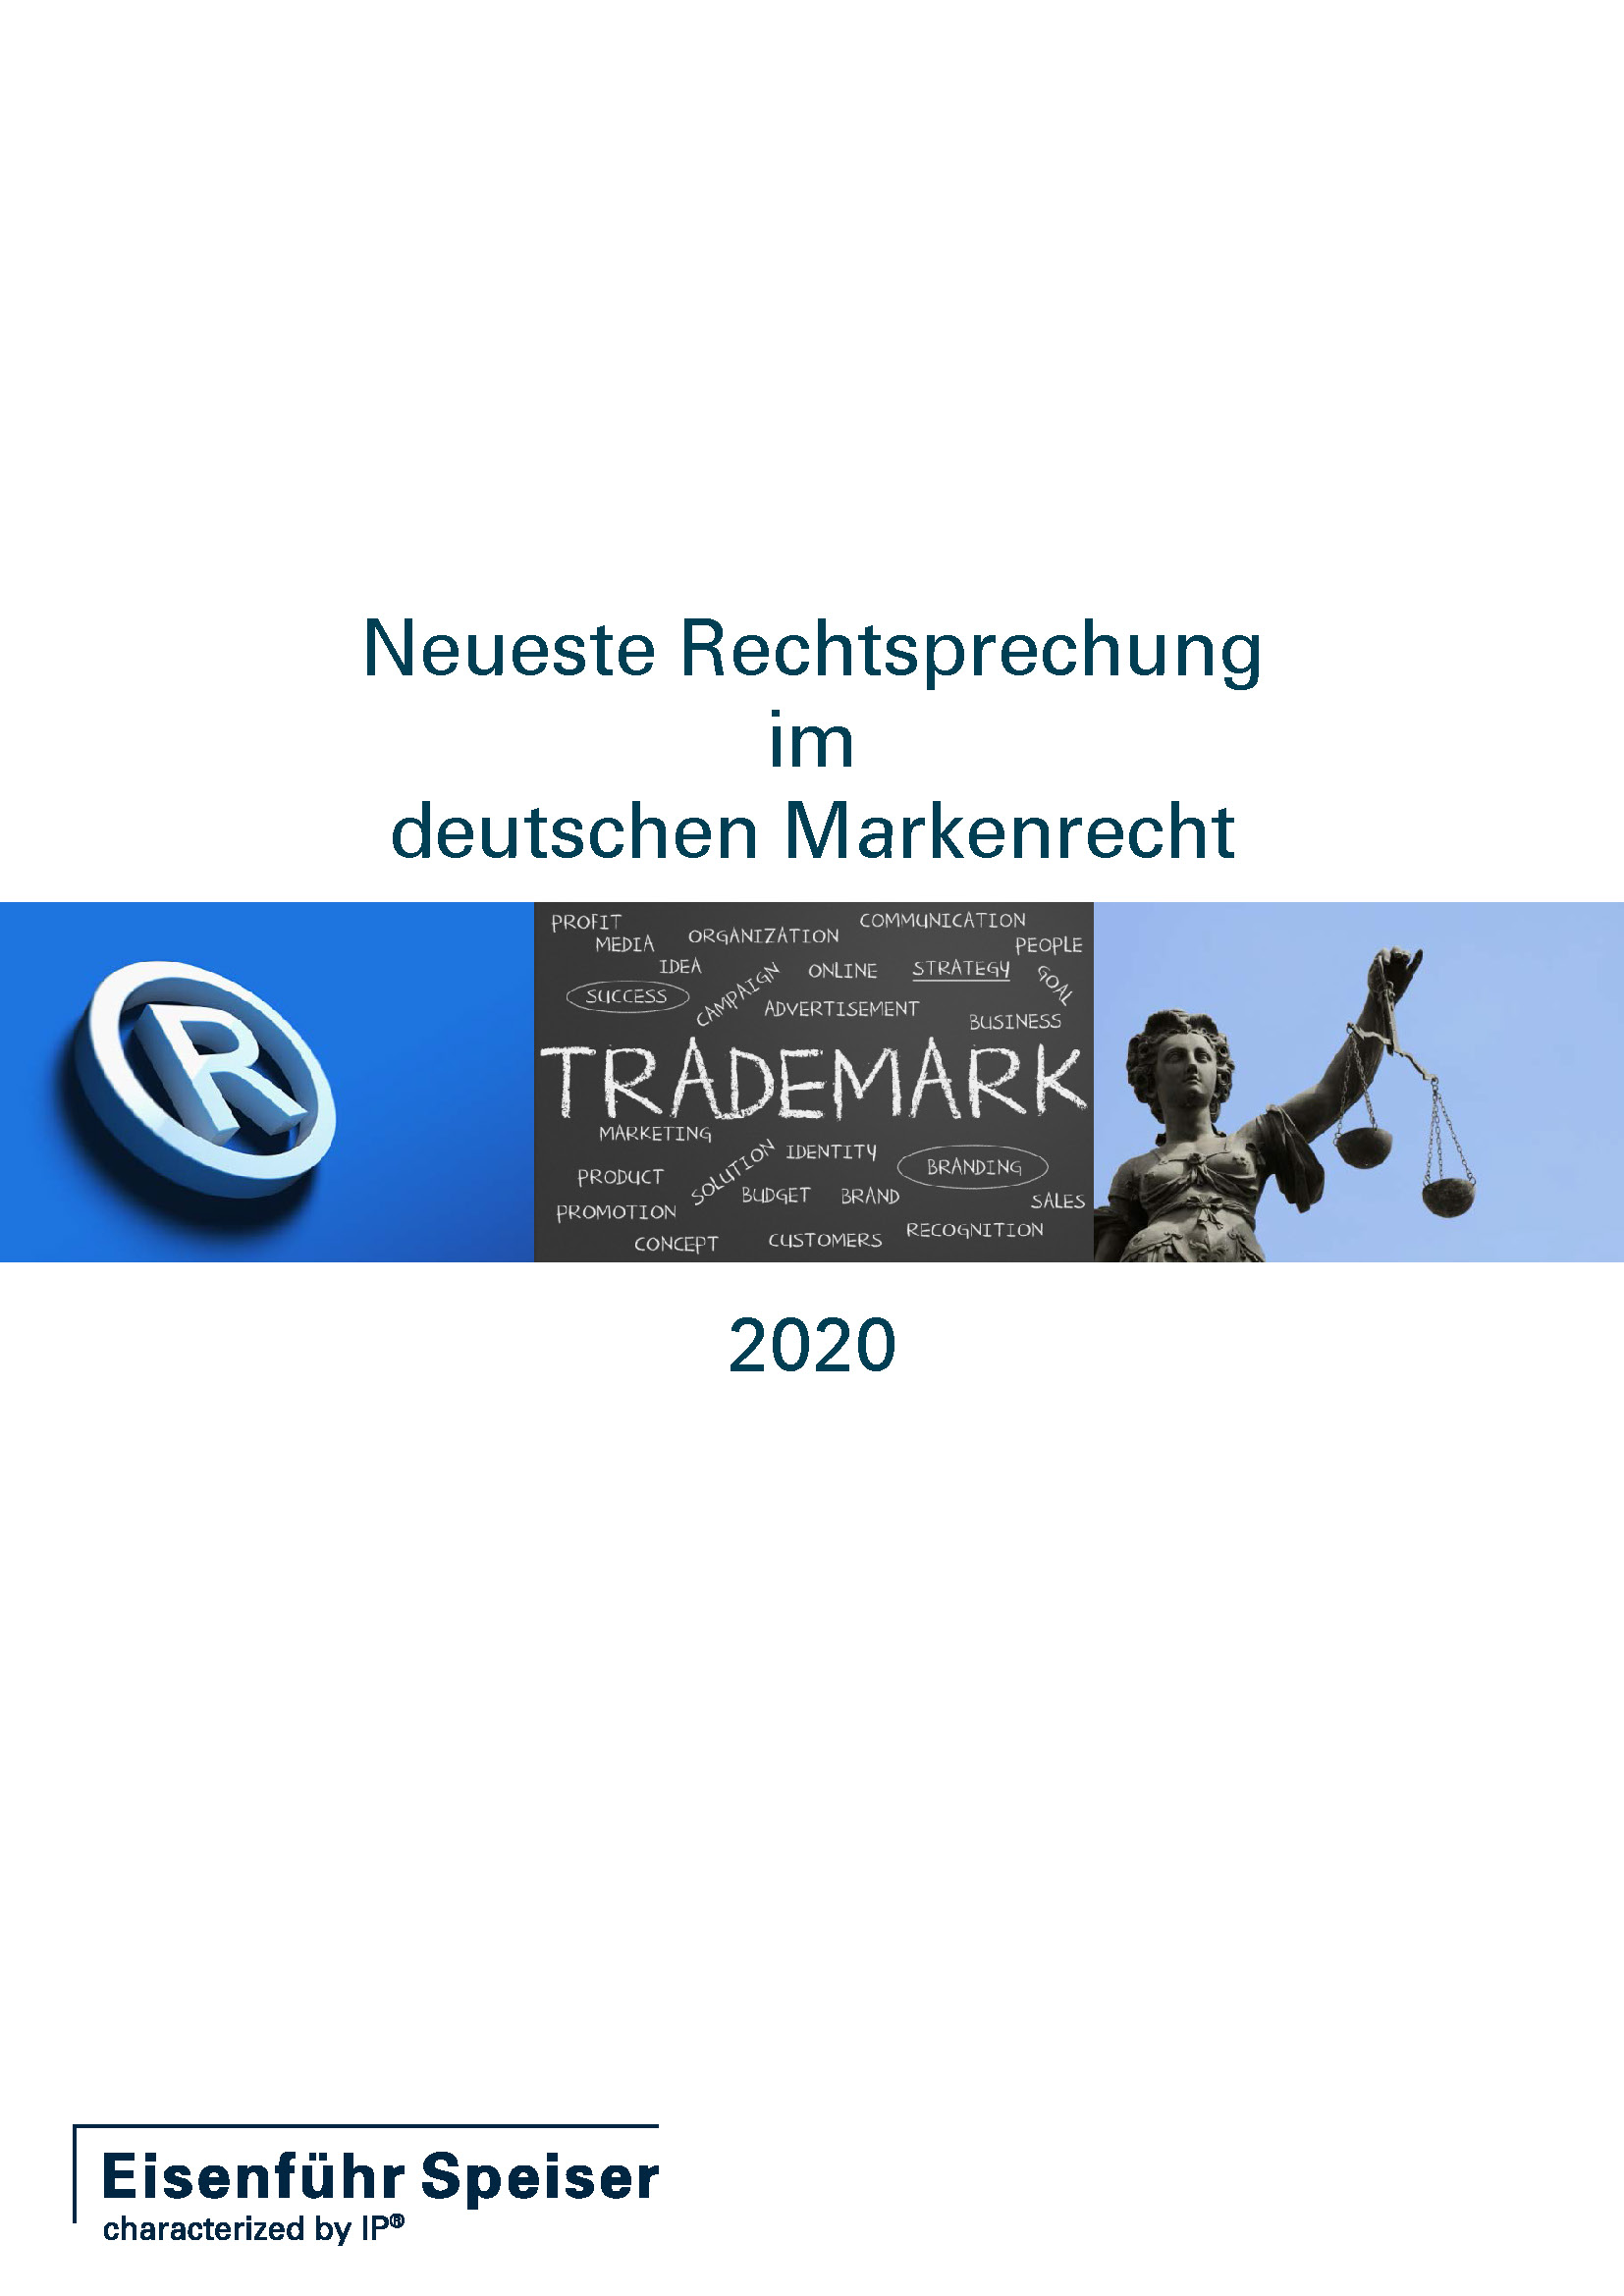 Neueste Rechtsprechung im deutschen Markenrecht 2020